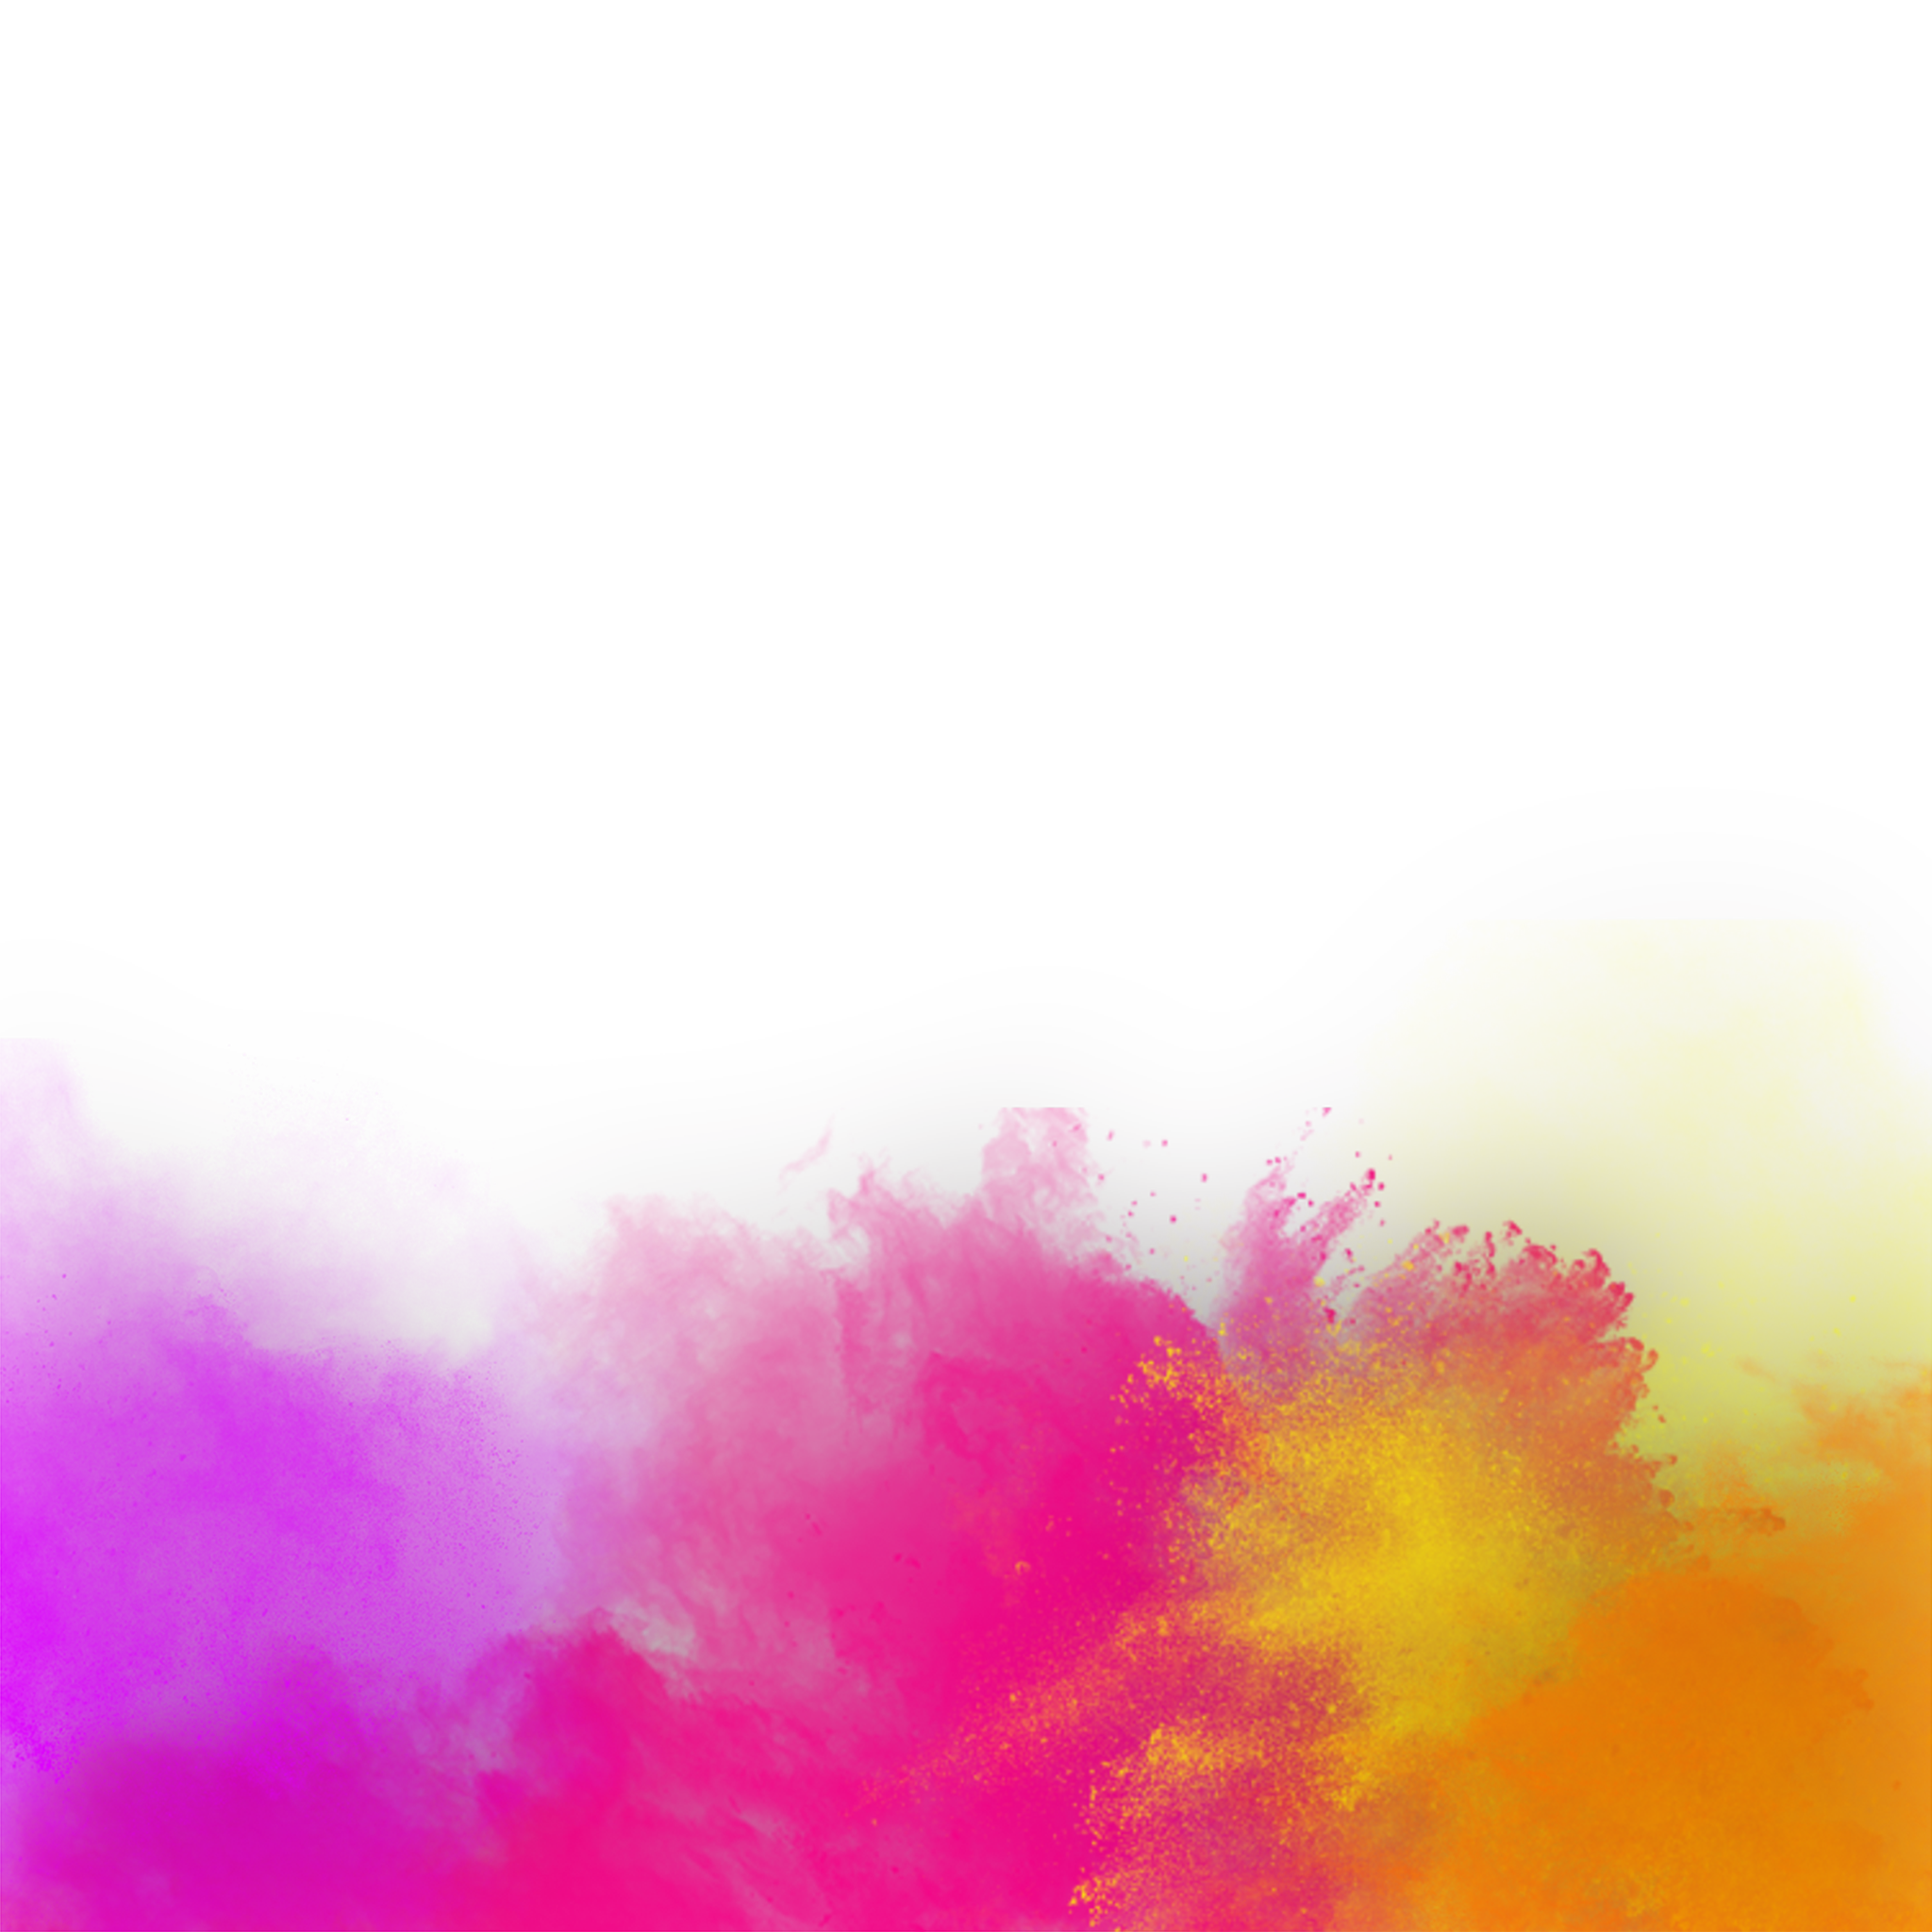 Holi Color Background: Vui tươi, sôi động và đa sắc màu, Holi Color Background sẽ làm cho bức ảnh của bạn trở nên sáng tạo và đầy năng lượng. Đừng bỏ lỡ bộ sưu tập này để thực hiện các ý tưởng nghệ thuật đỉnh cao và những trải nghiệm tuyệt vời trong cuộc sống.